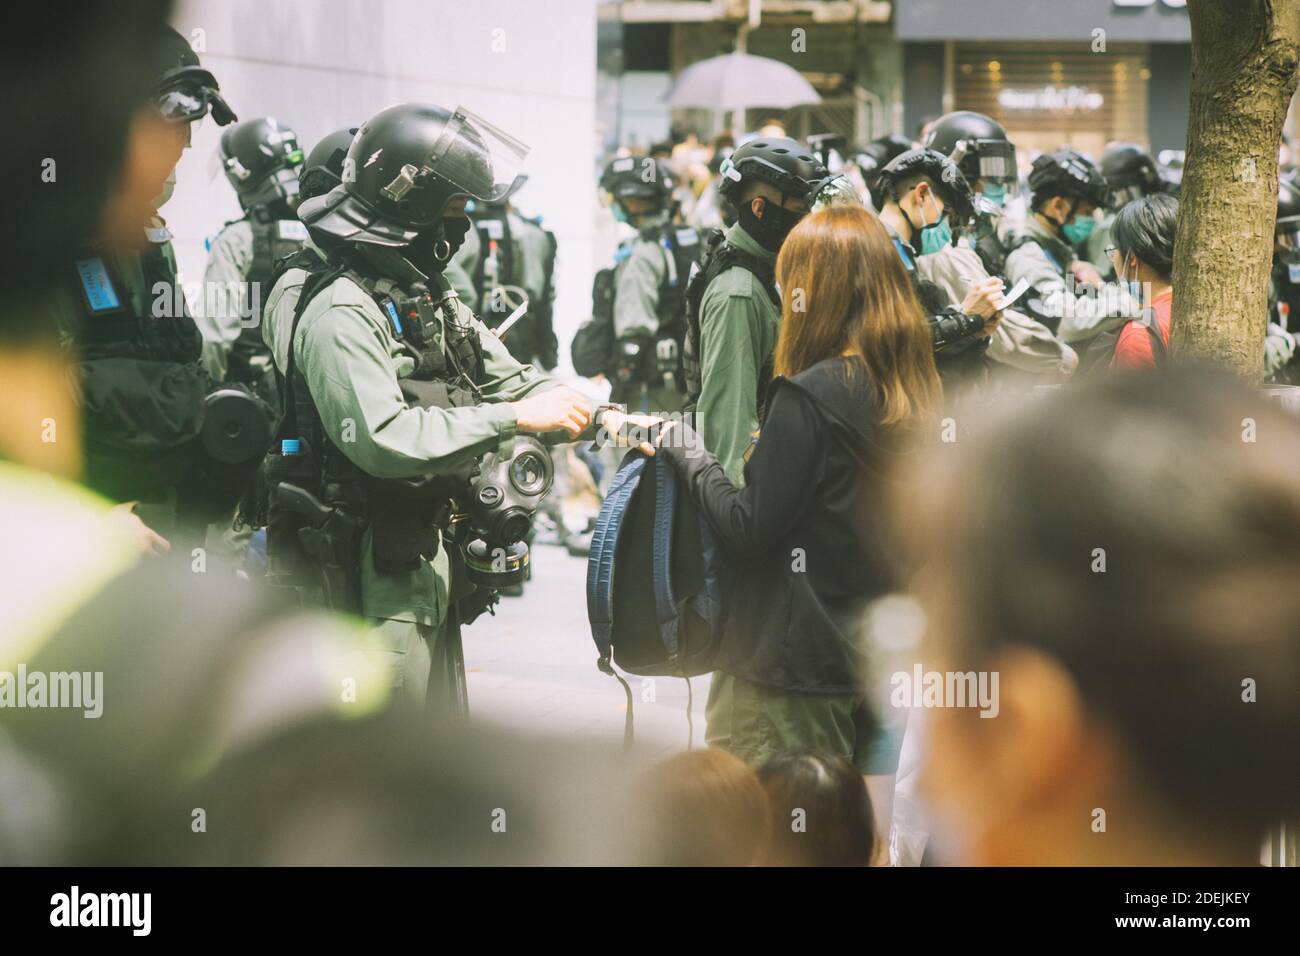 Hong Kong, 27 de mayo de 2020, los manifestantes son detenidos por la policía como una Asamblea ilegal en Causeway Bay. Las personas están usando la máscara como control de prevención Covid 19. Foto de stock